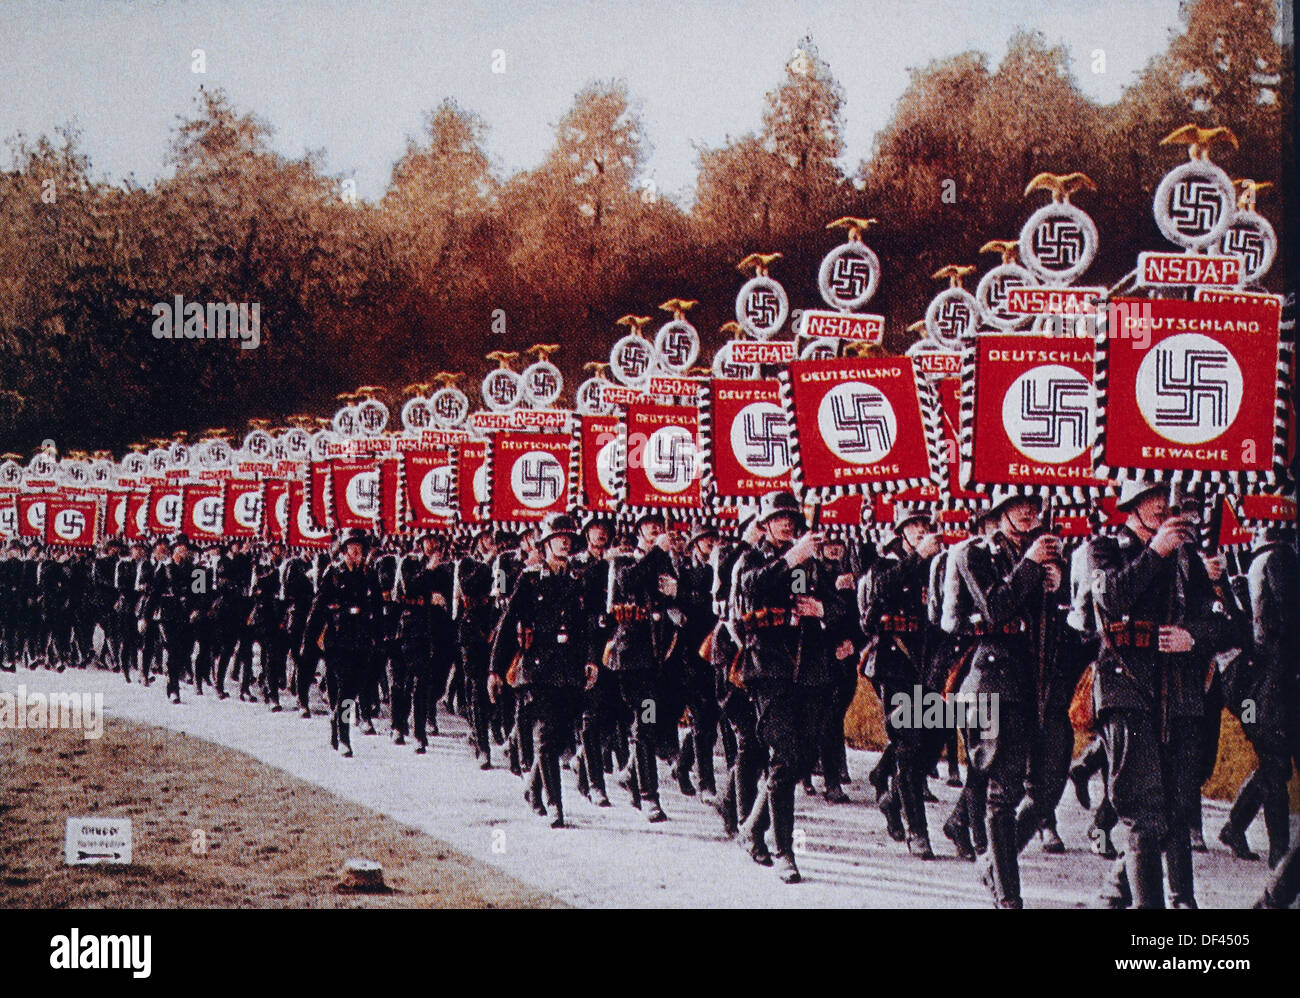 German SS Troops Bearing Standards March in Zeppelin Field, Nurnberg, Germany, 1933 Stock Photo